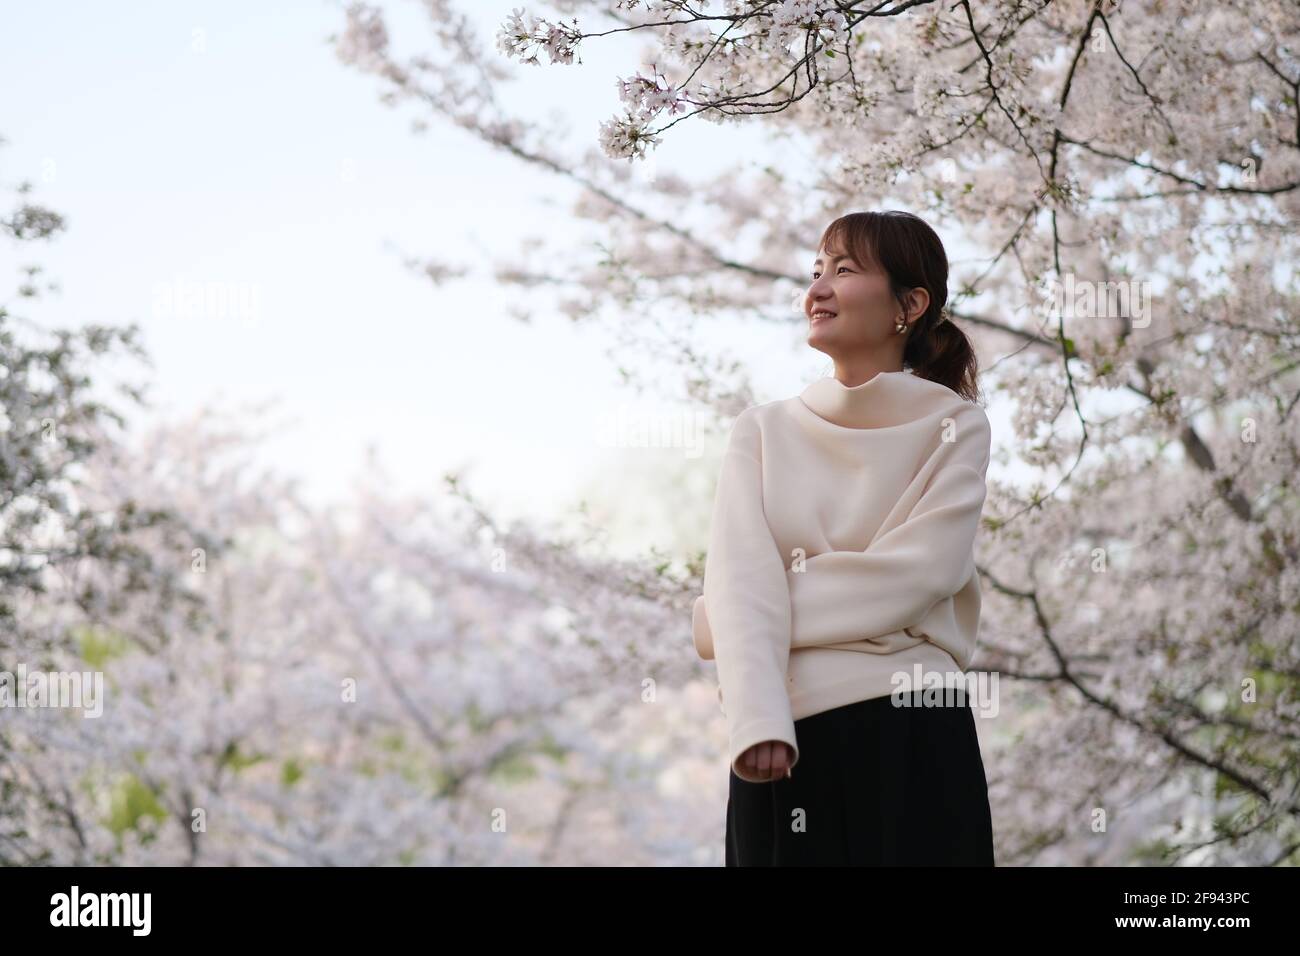 Foto media de una mujer joven asiática sonriente bajo el árbol blanco de la flor sakura Foto de stock